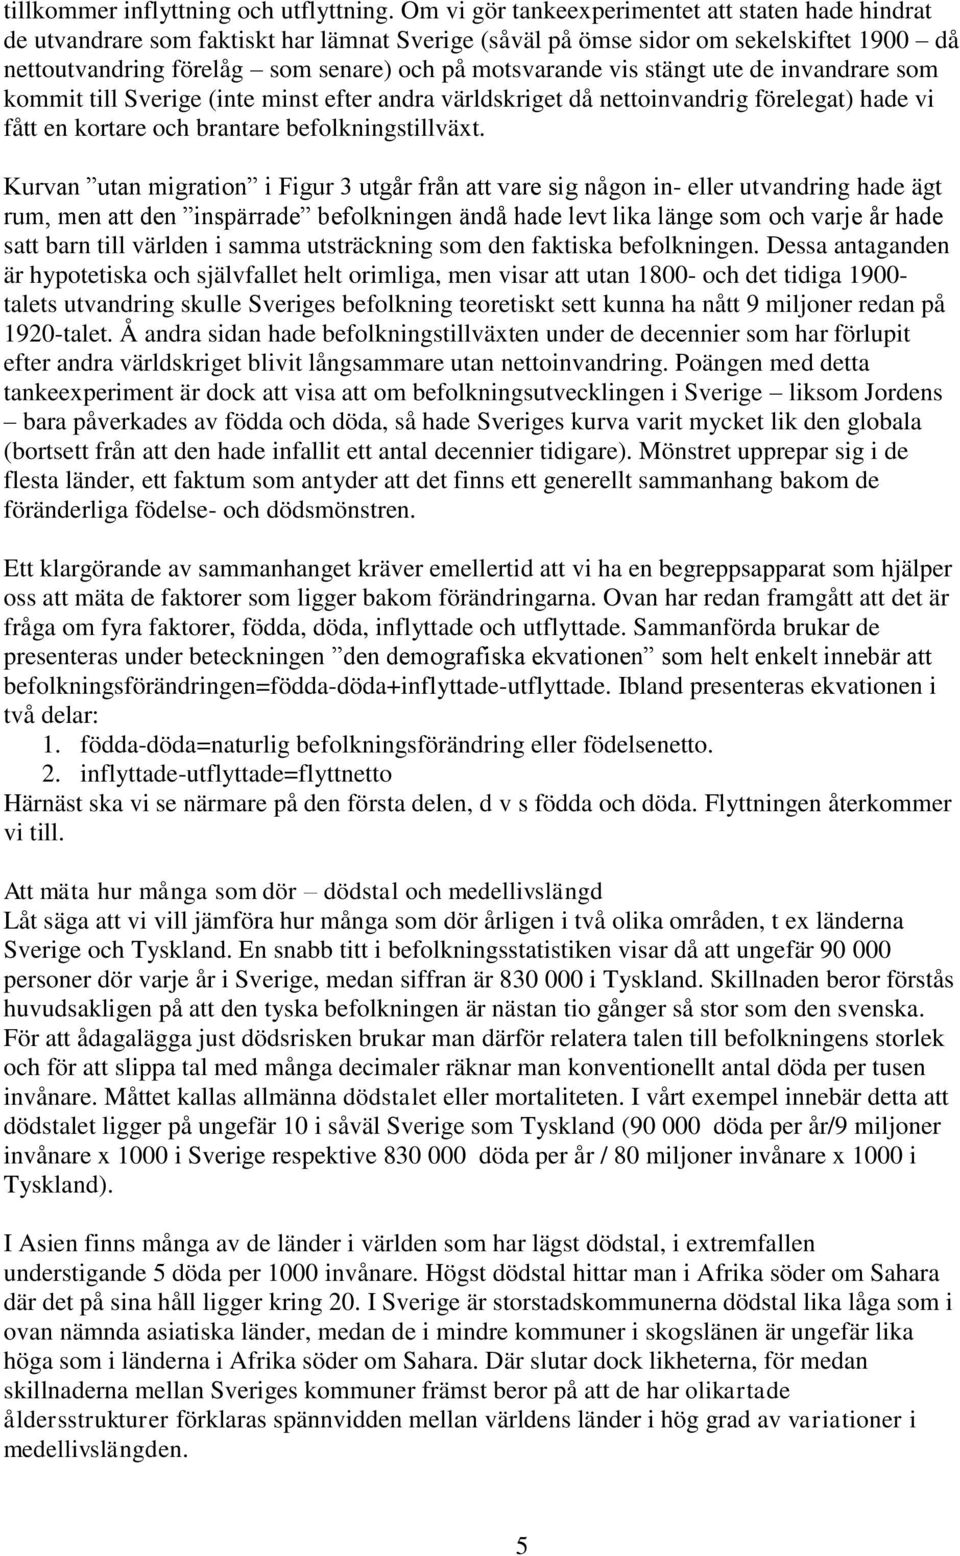 vis stängt ute de invandrare som kommit till Sverige (inte minst efter andra världskriget då nettoinvandrig förelegat) hade vi fått en kortare och brantare befolkningstillväxt.